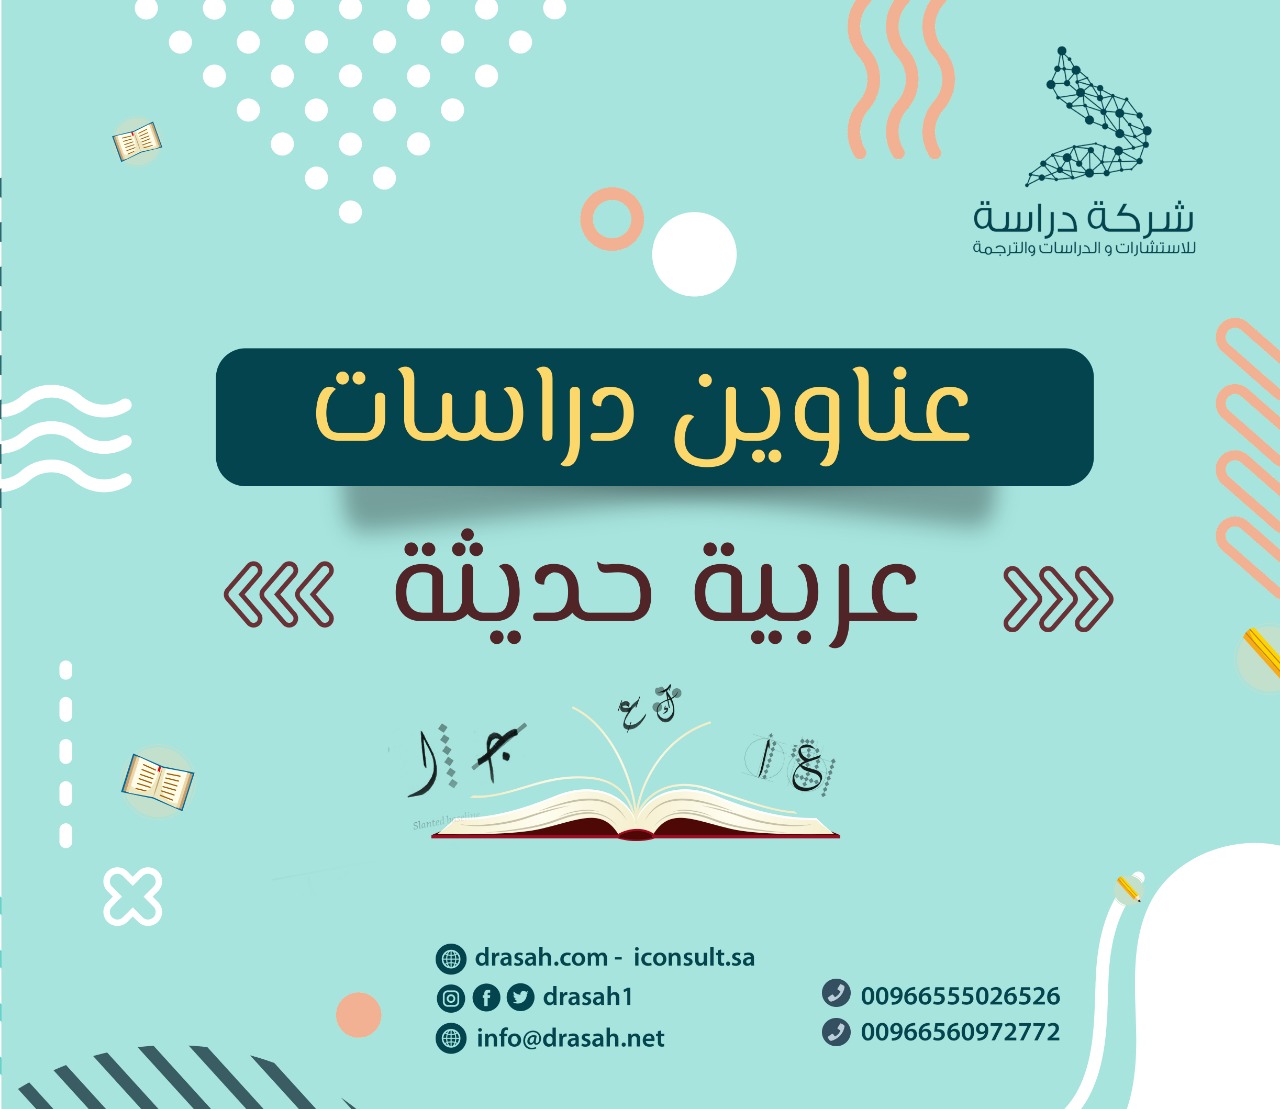 عناوين دراسات سابقة عربية حول  دراسات تناولت المهارات الإرشادية لدى المرشد الطلابي